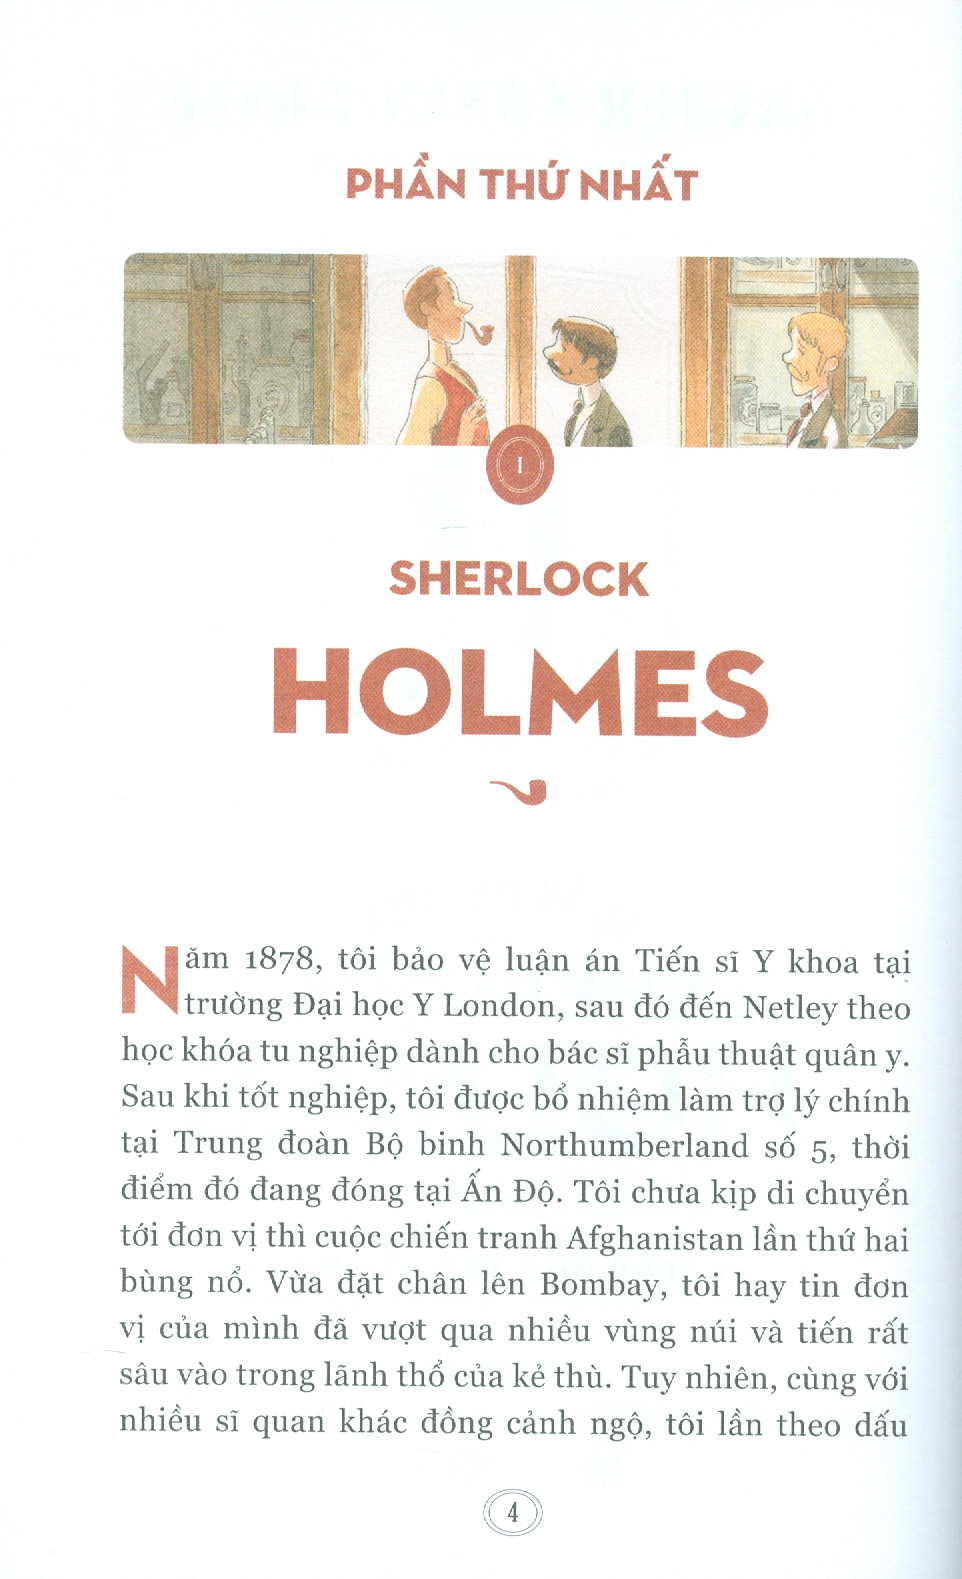 VỤ ÁN ĐẦU TIÊN CỦA SHERLOCK HOLMES - Cuộc điều tra màu đỏ – Arthur Conan Doyle -Vincent Mallié minh hoạ – Cẩm Vân dịch  - Thái Hà - NXB Hà Nội – Bìa mềm có minh hoạ